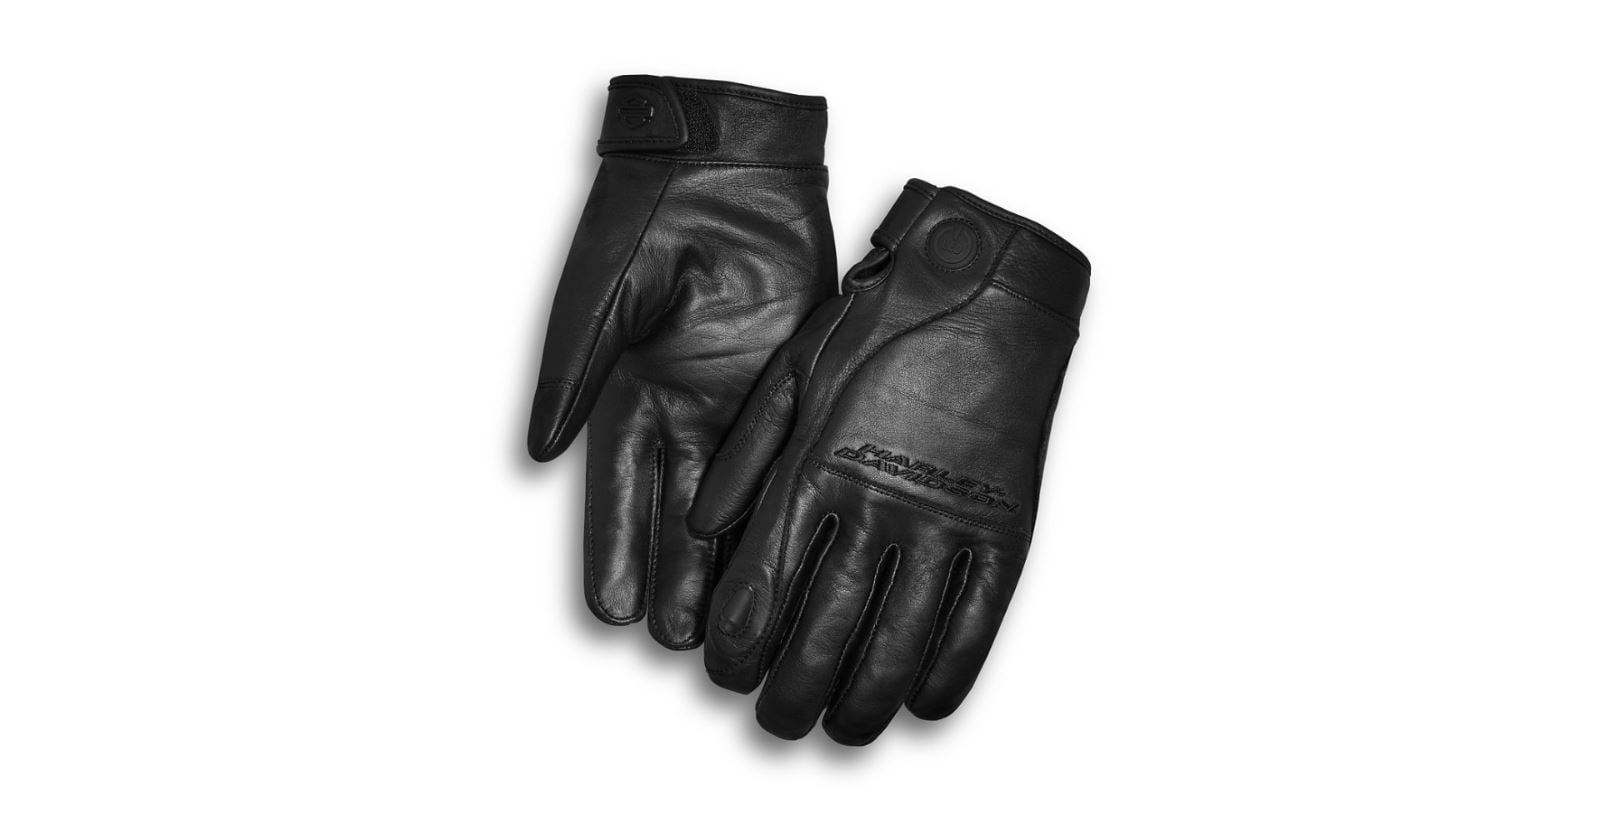 Harley Davidson Men S Lambent Leather Full Finger Gloves 98352 17vm Walmart Com